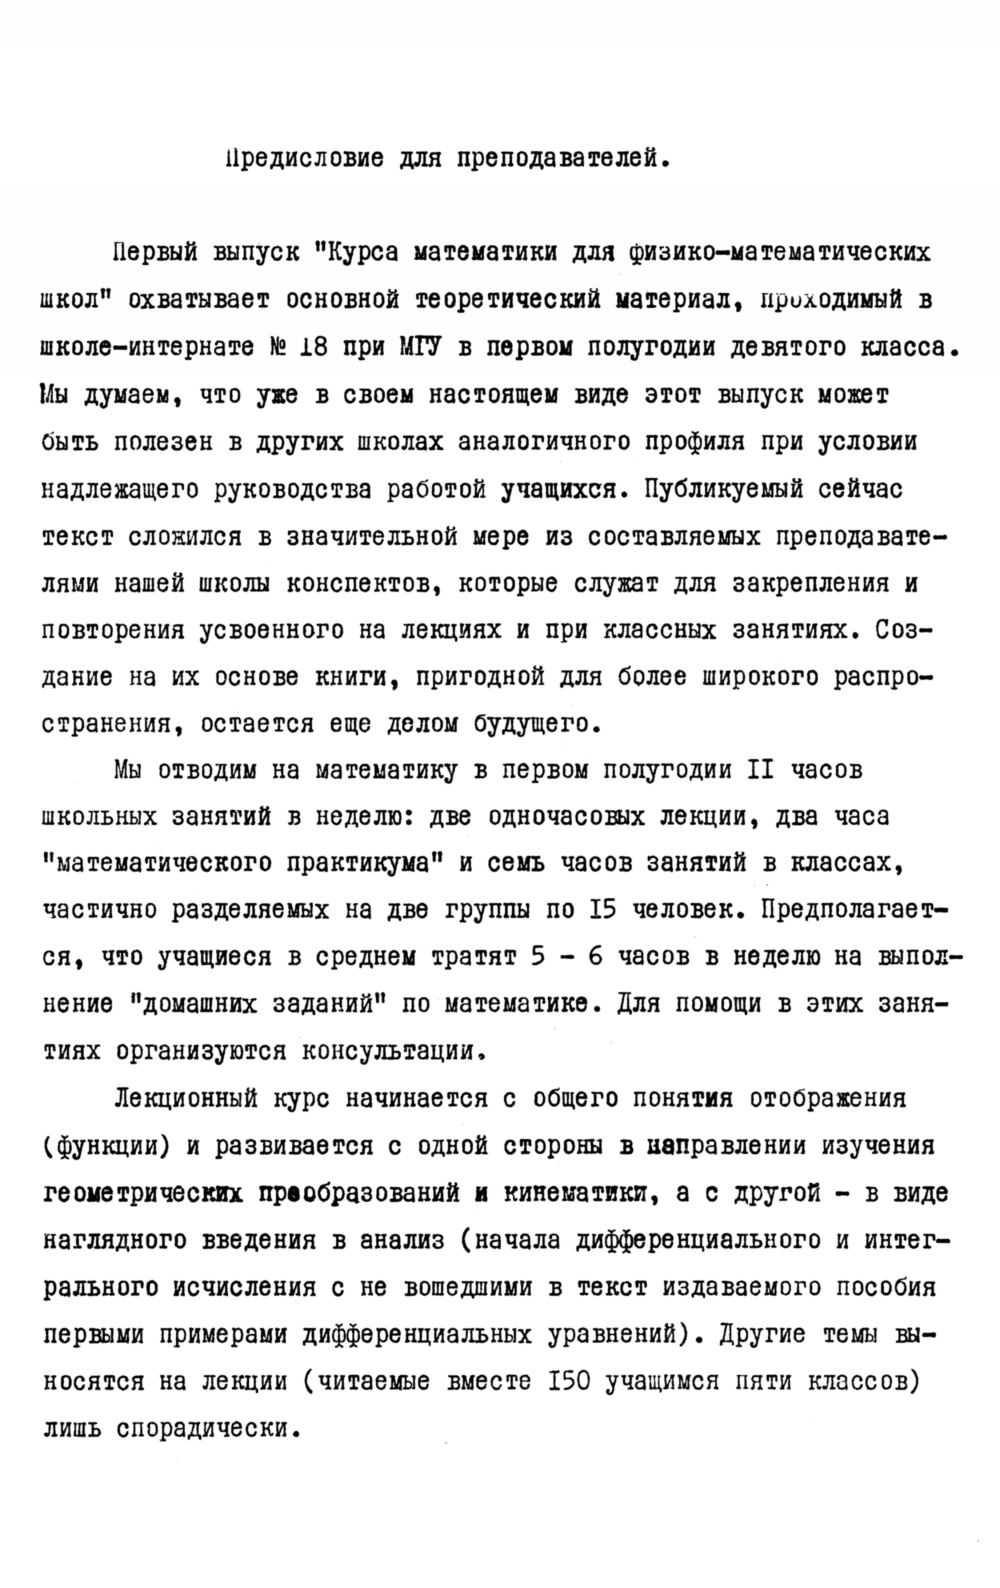 Колмогоров А. Н. и др. Курс математики для физико-математических школ. —  1971 // Библиотека Mathedu.Ru